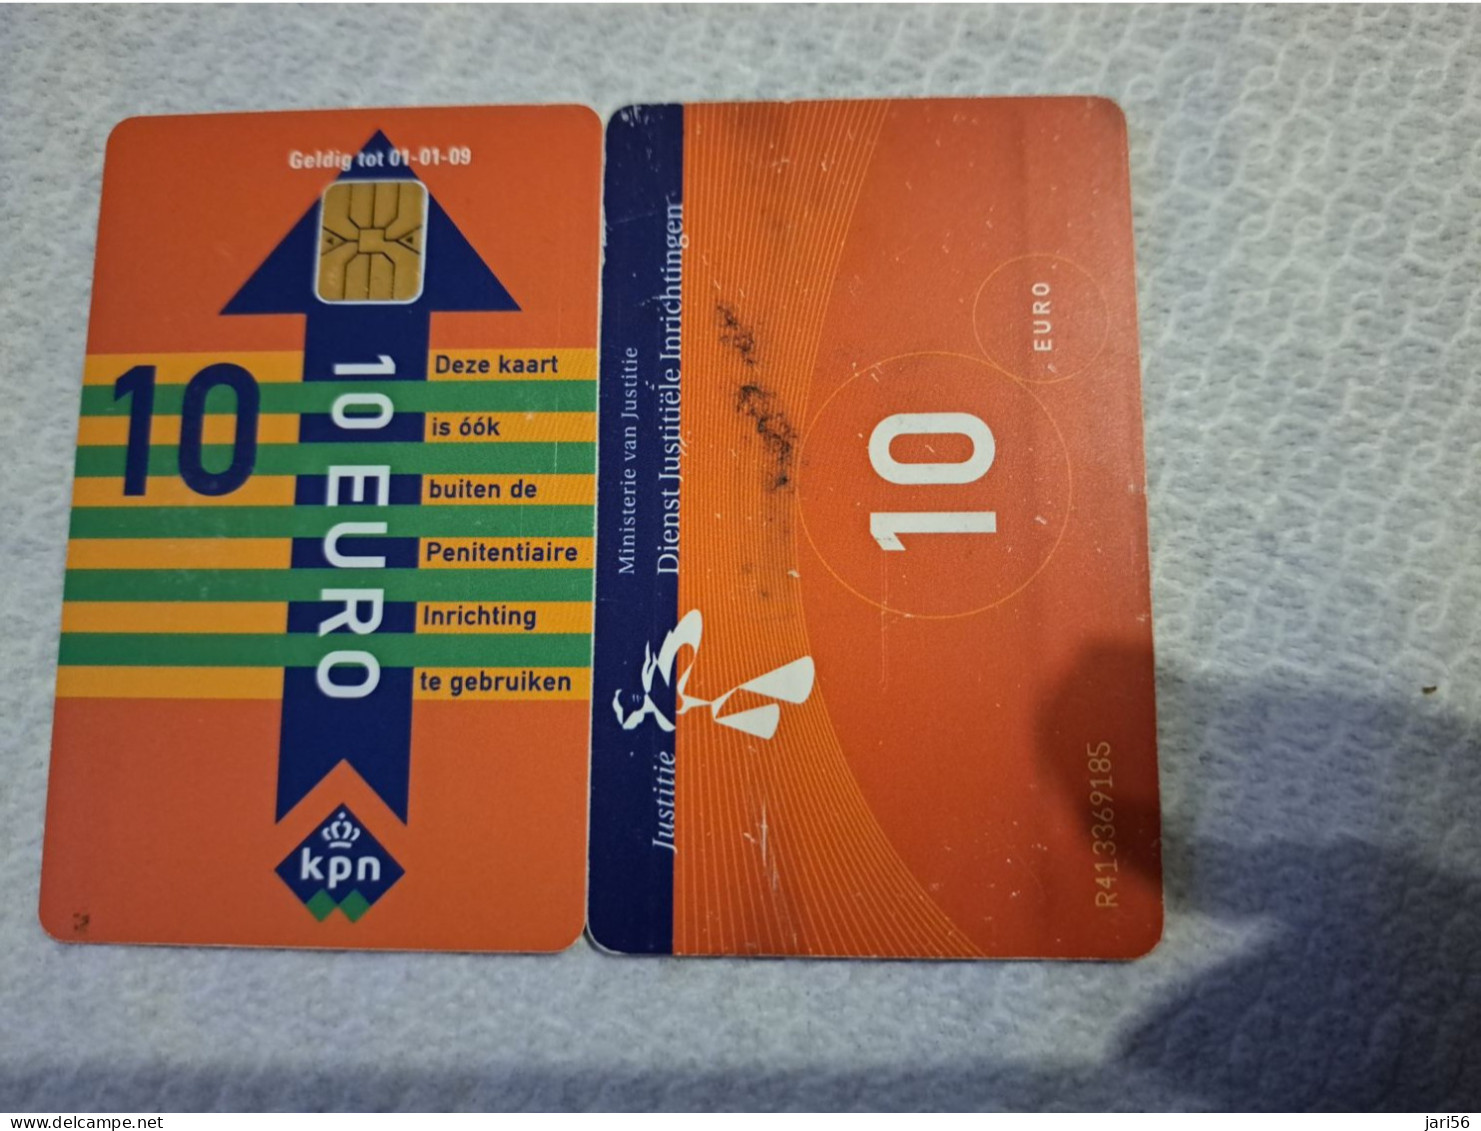 NETHERLANDS   € 10,-   / USED  / DATE  01-01-09  JUSTITIE/PRISON CARD  CHIP CARD/ USED   ** 16162** - GSM-Kaarten, Bijvulling & Vooraf Betaalde